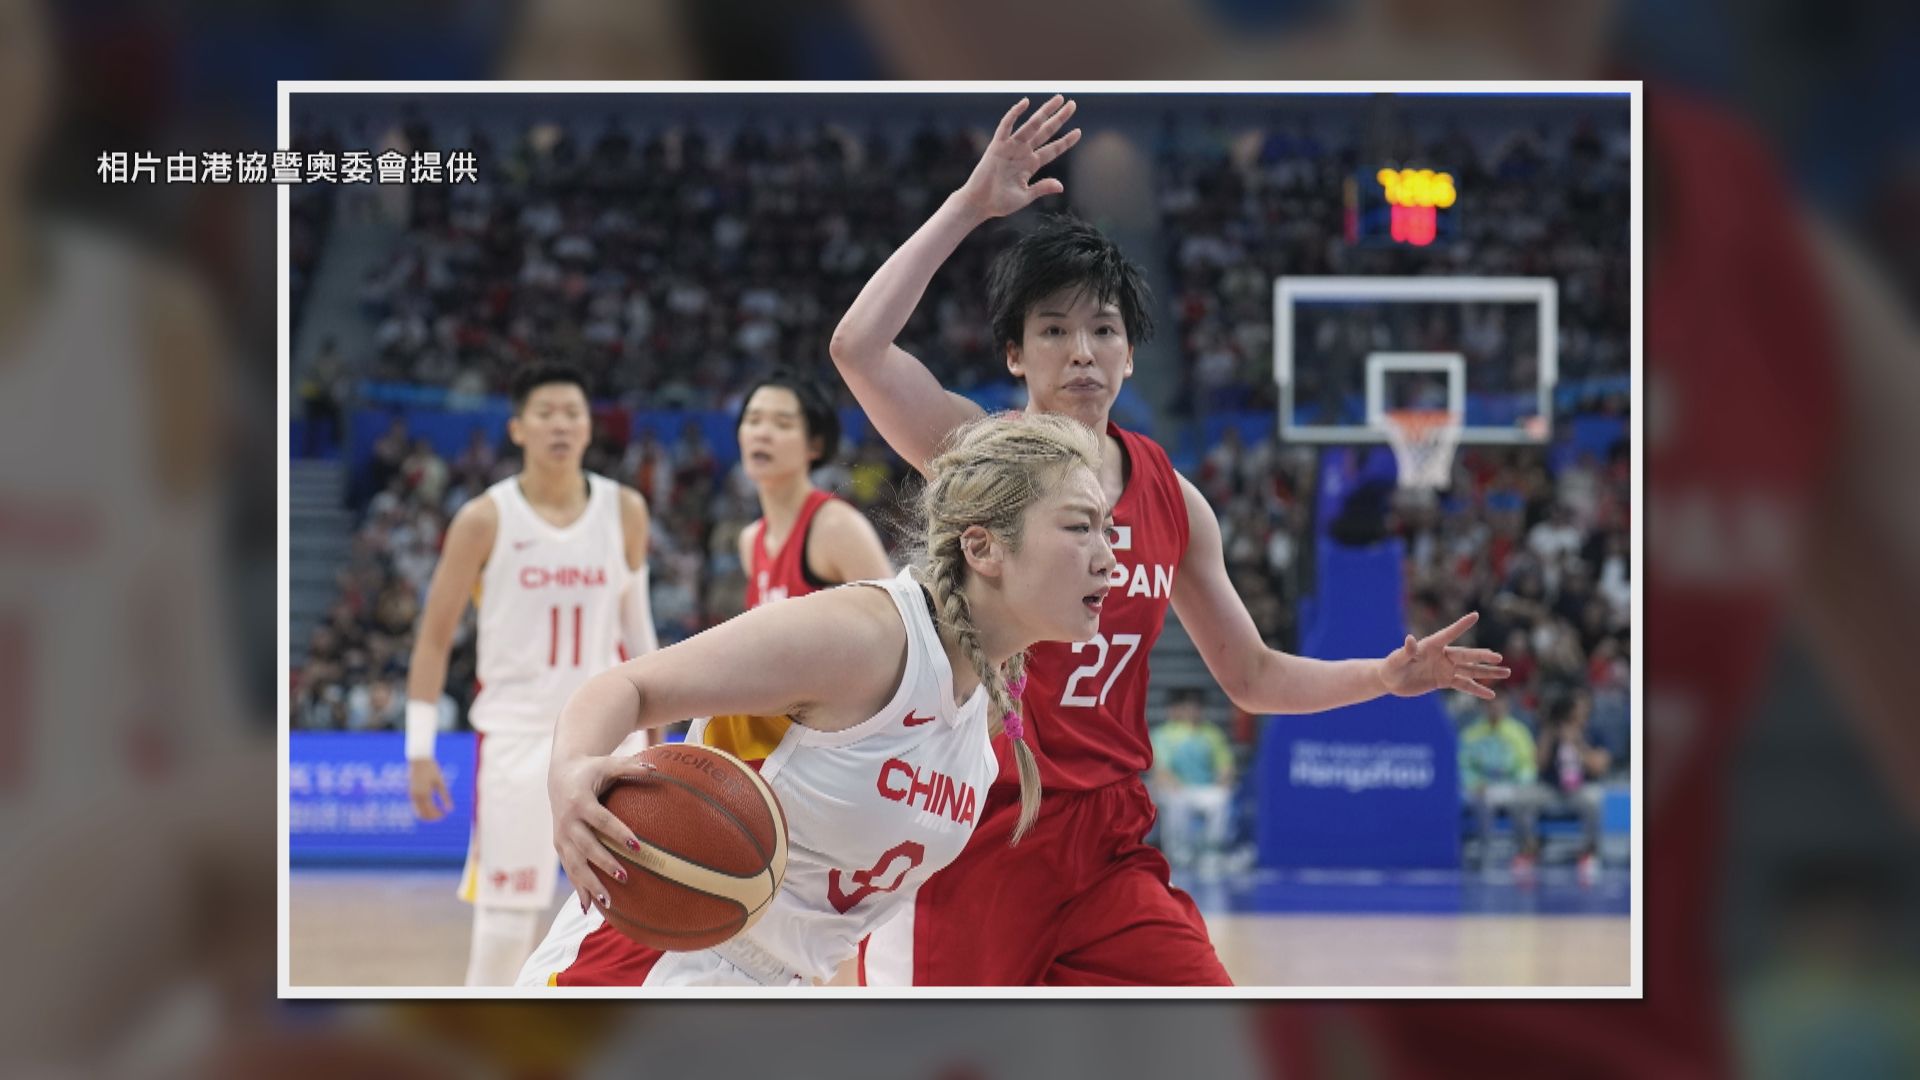 杭州亞運女子籃球 國家隊兩分險勝日本奪金